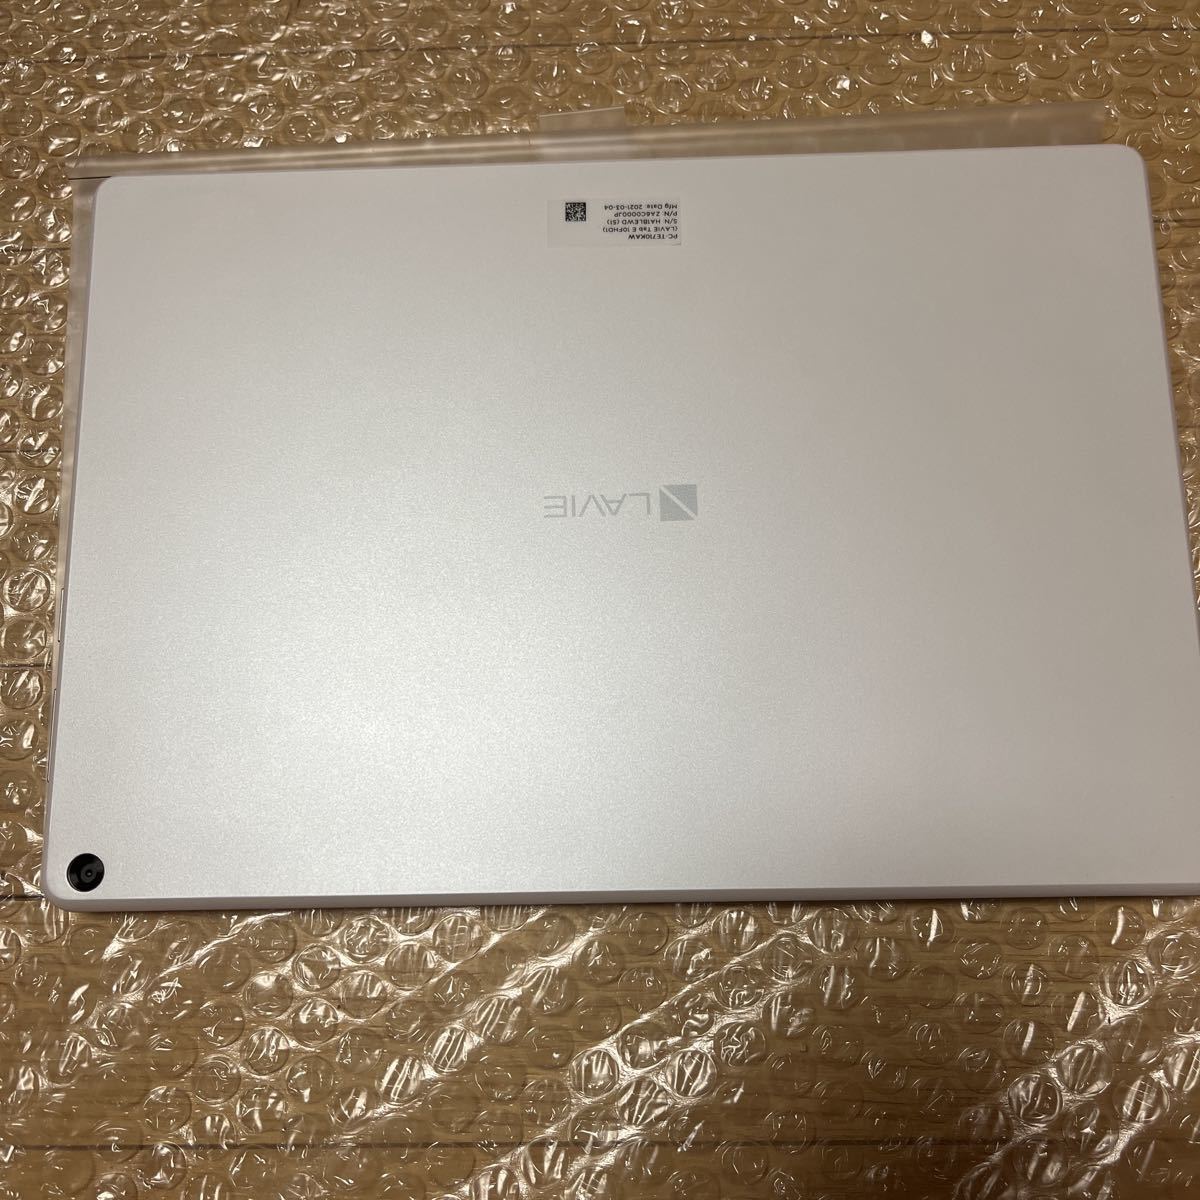 人気商品 NEC PC-TE710KAW ホワイト LAVIE Tab E 未使用 タブレット